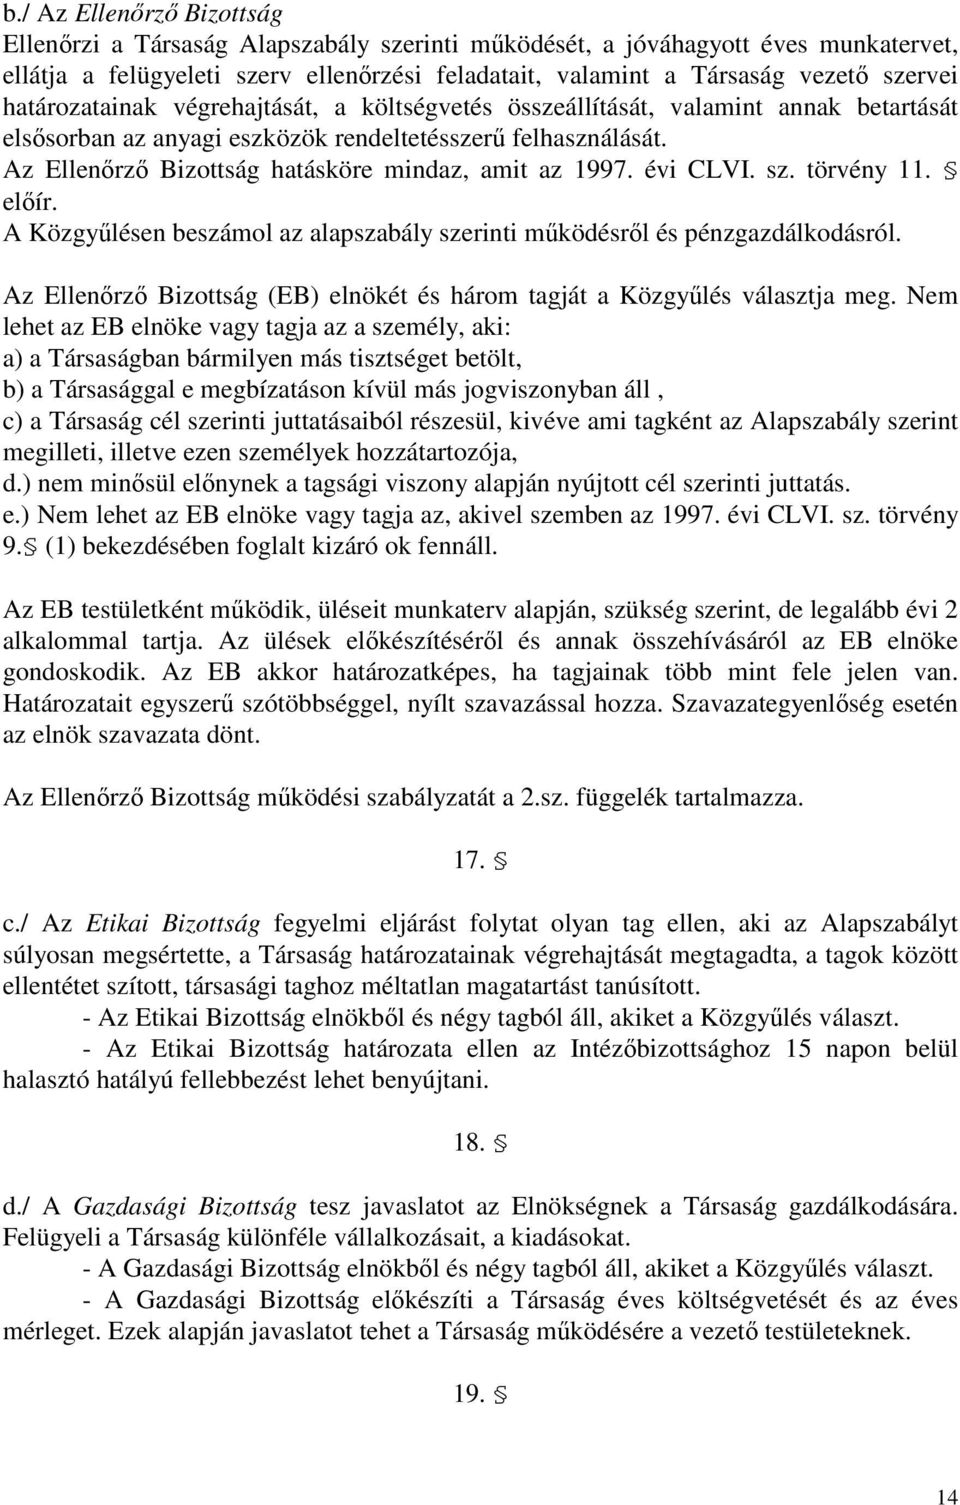 Az Ellenırzı Bizottság hatásköre mindaz, amit az 1997. évi CLVI. sz. törvény 11. elıír. A Közgyőlésen beszámol az alapszabály szerinti mőködésrıl és pénzgazdálkodásról.